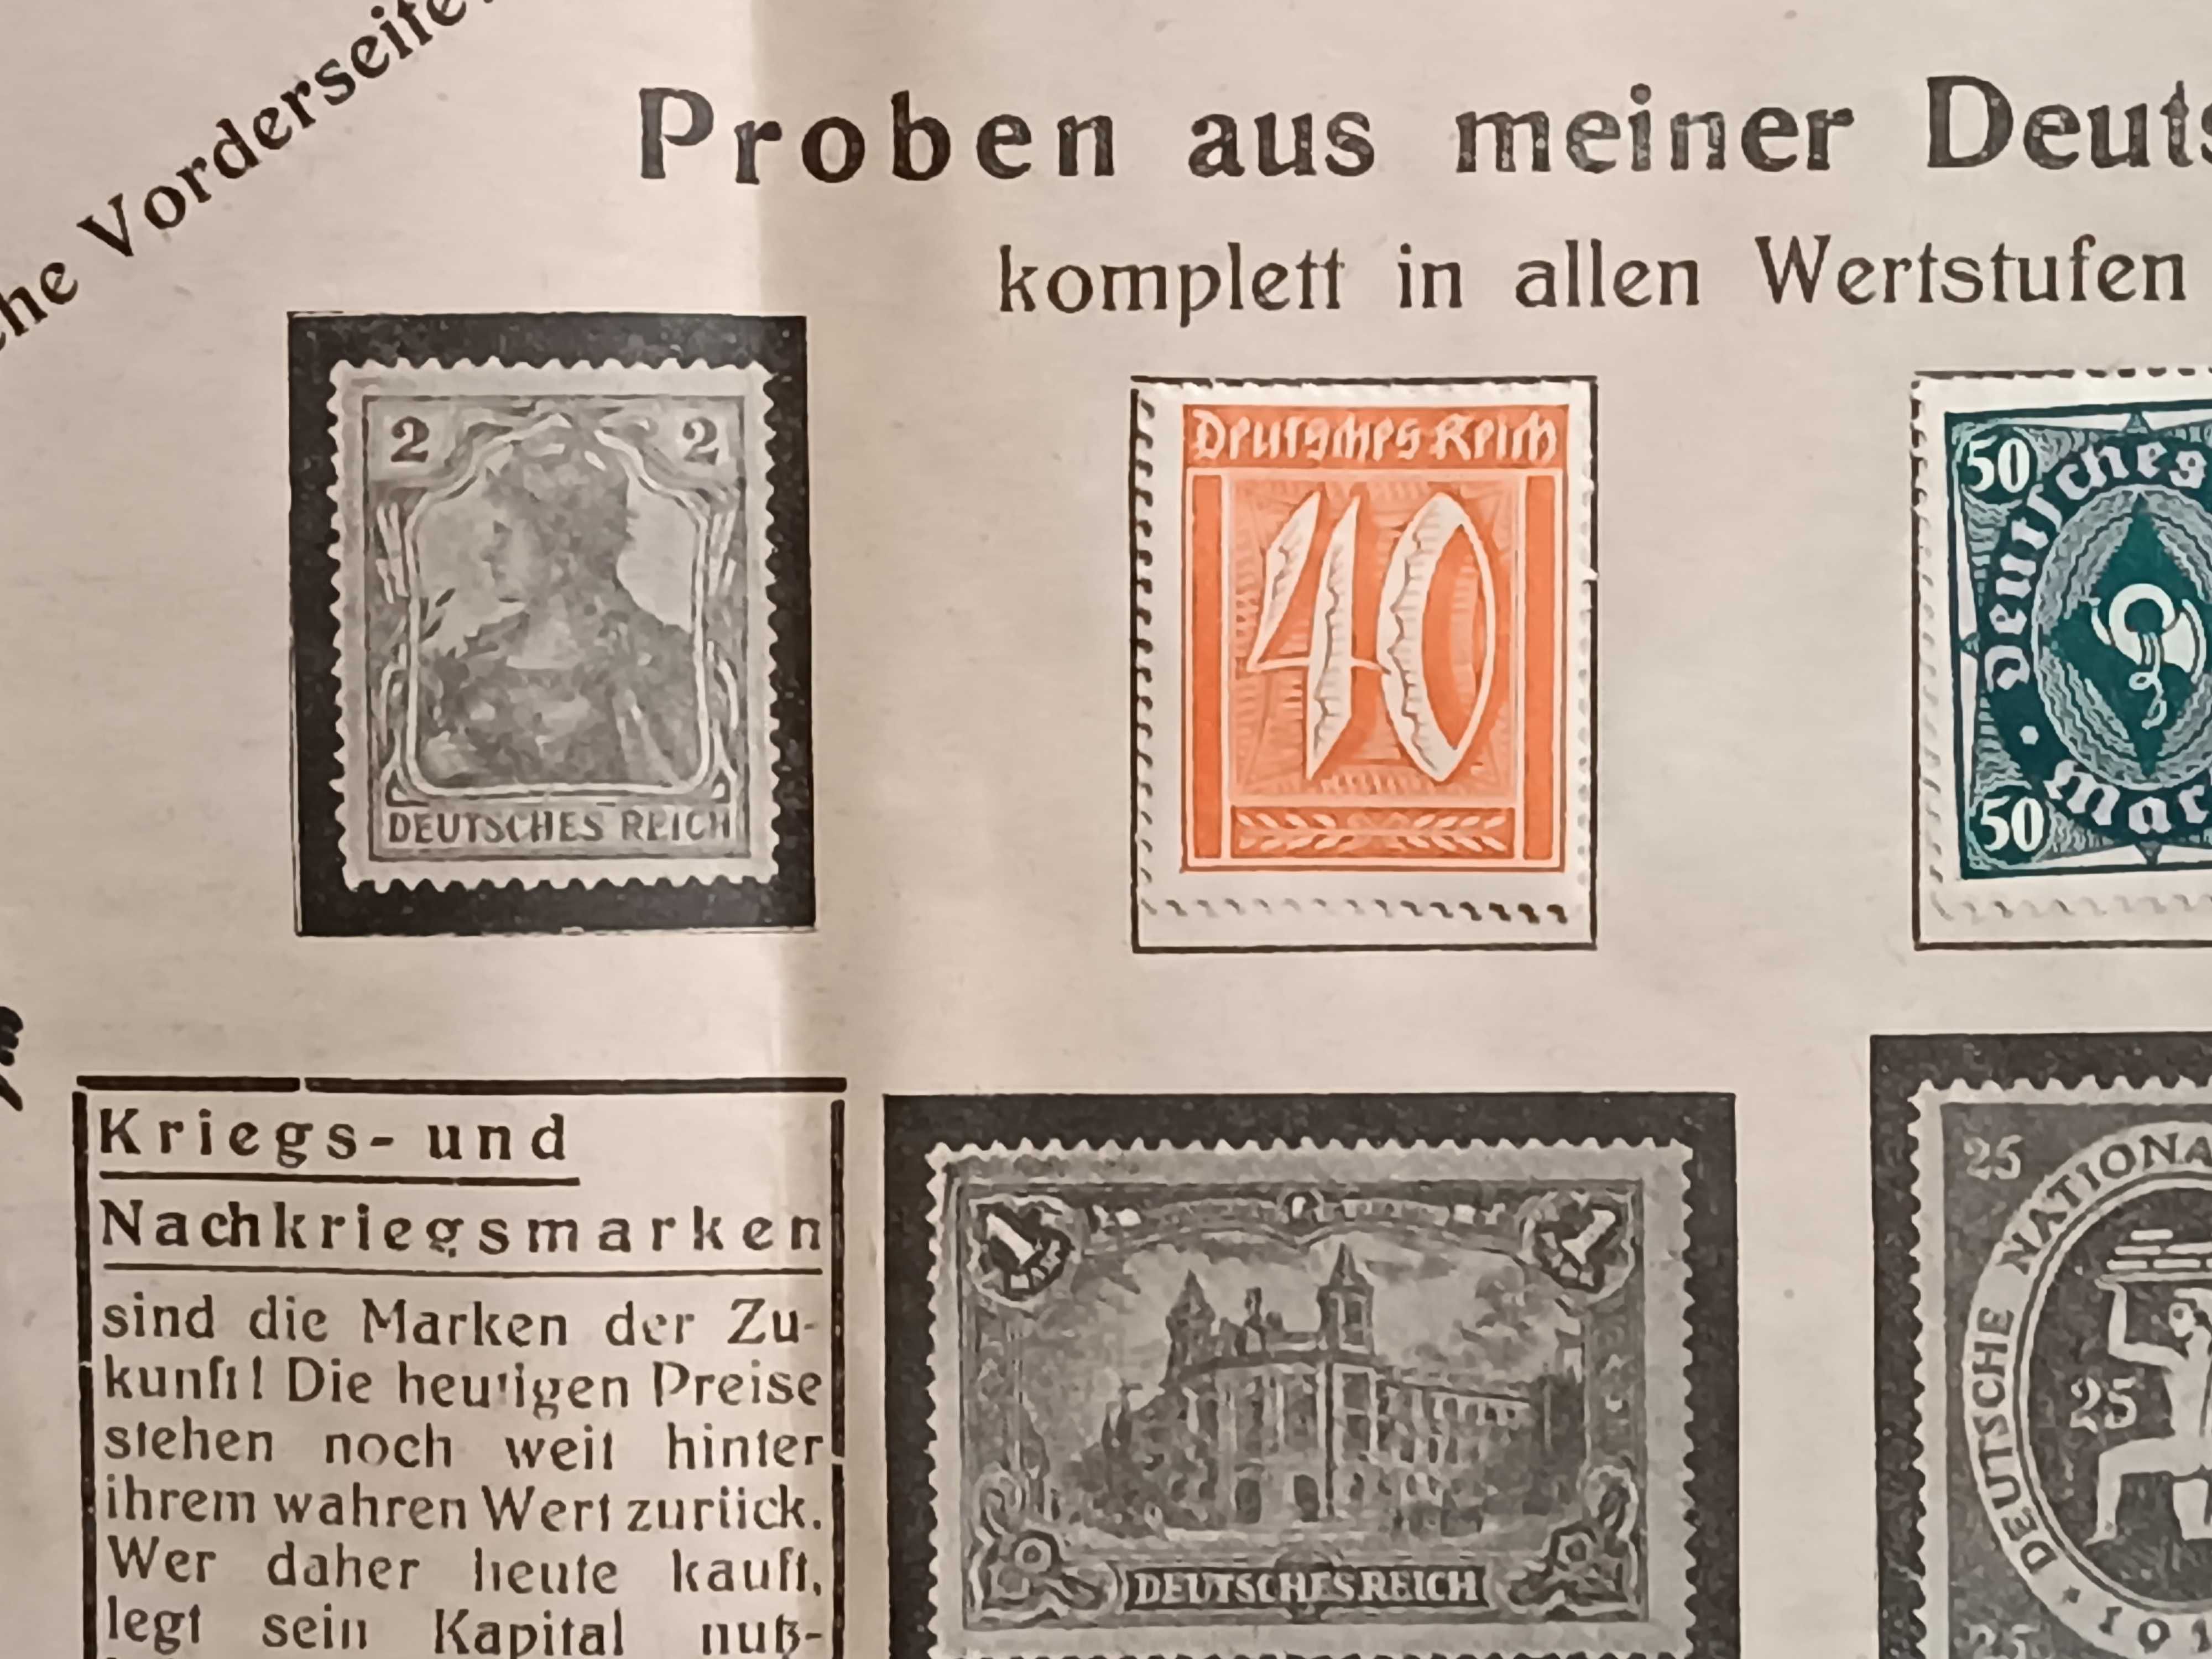 Próbki specjalnej kolekcji znaczków w Rzeszy Niemieckiej